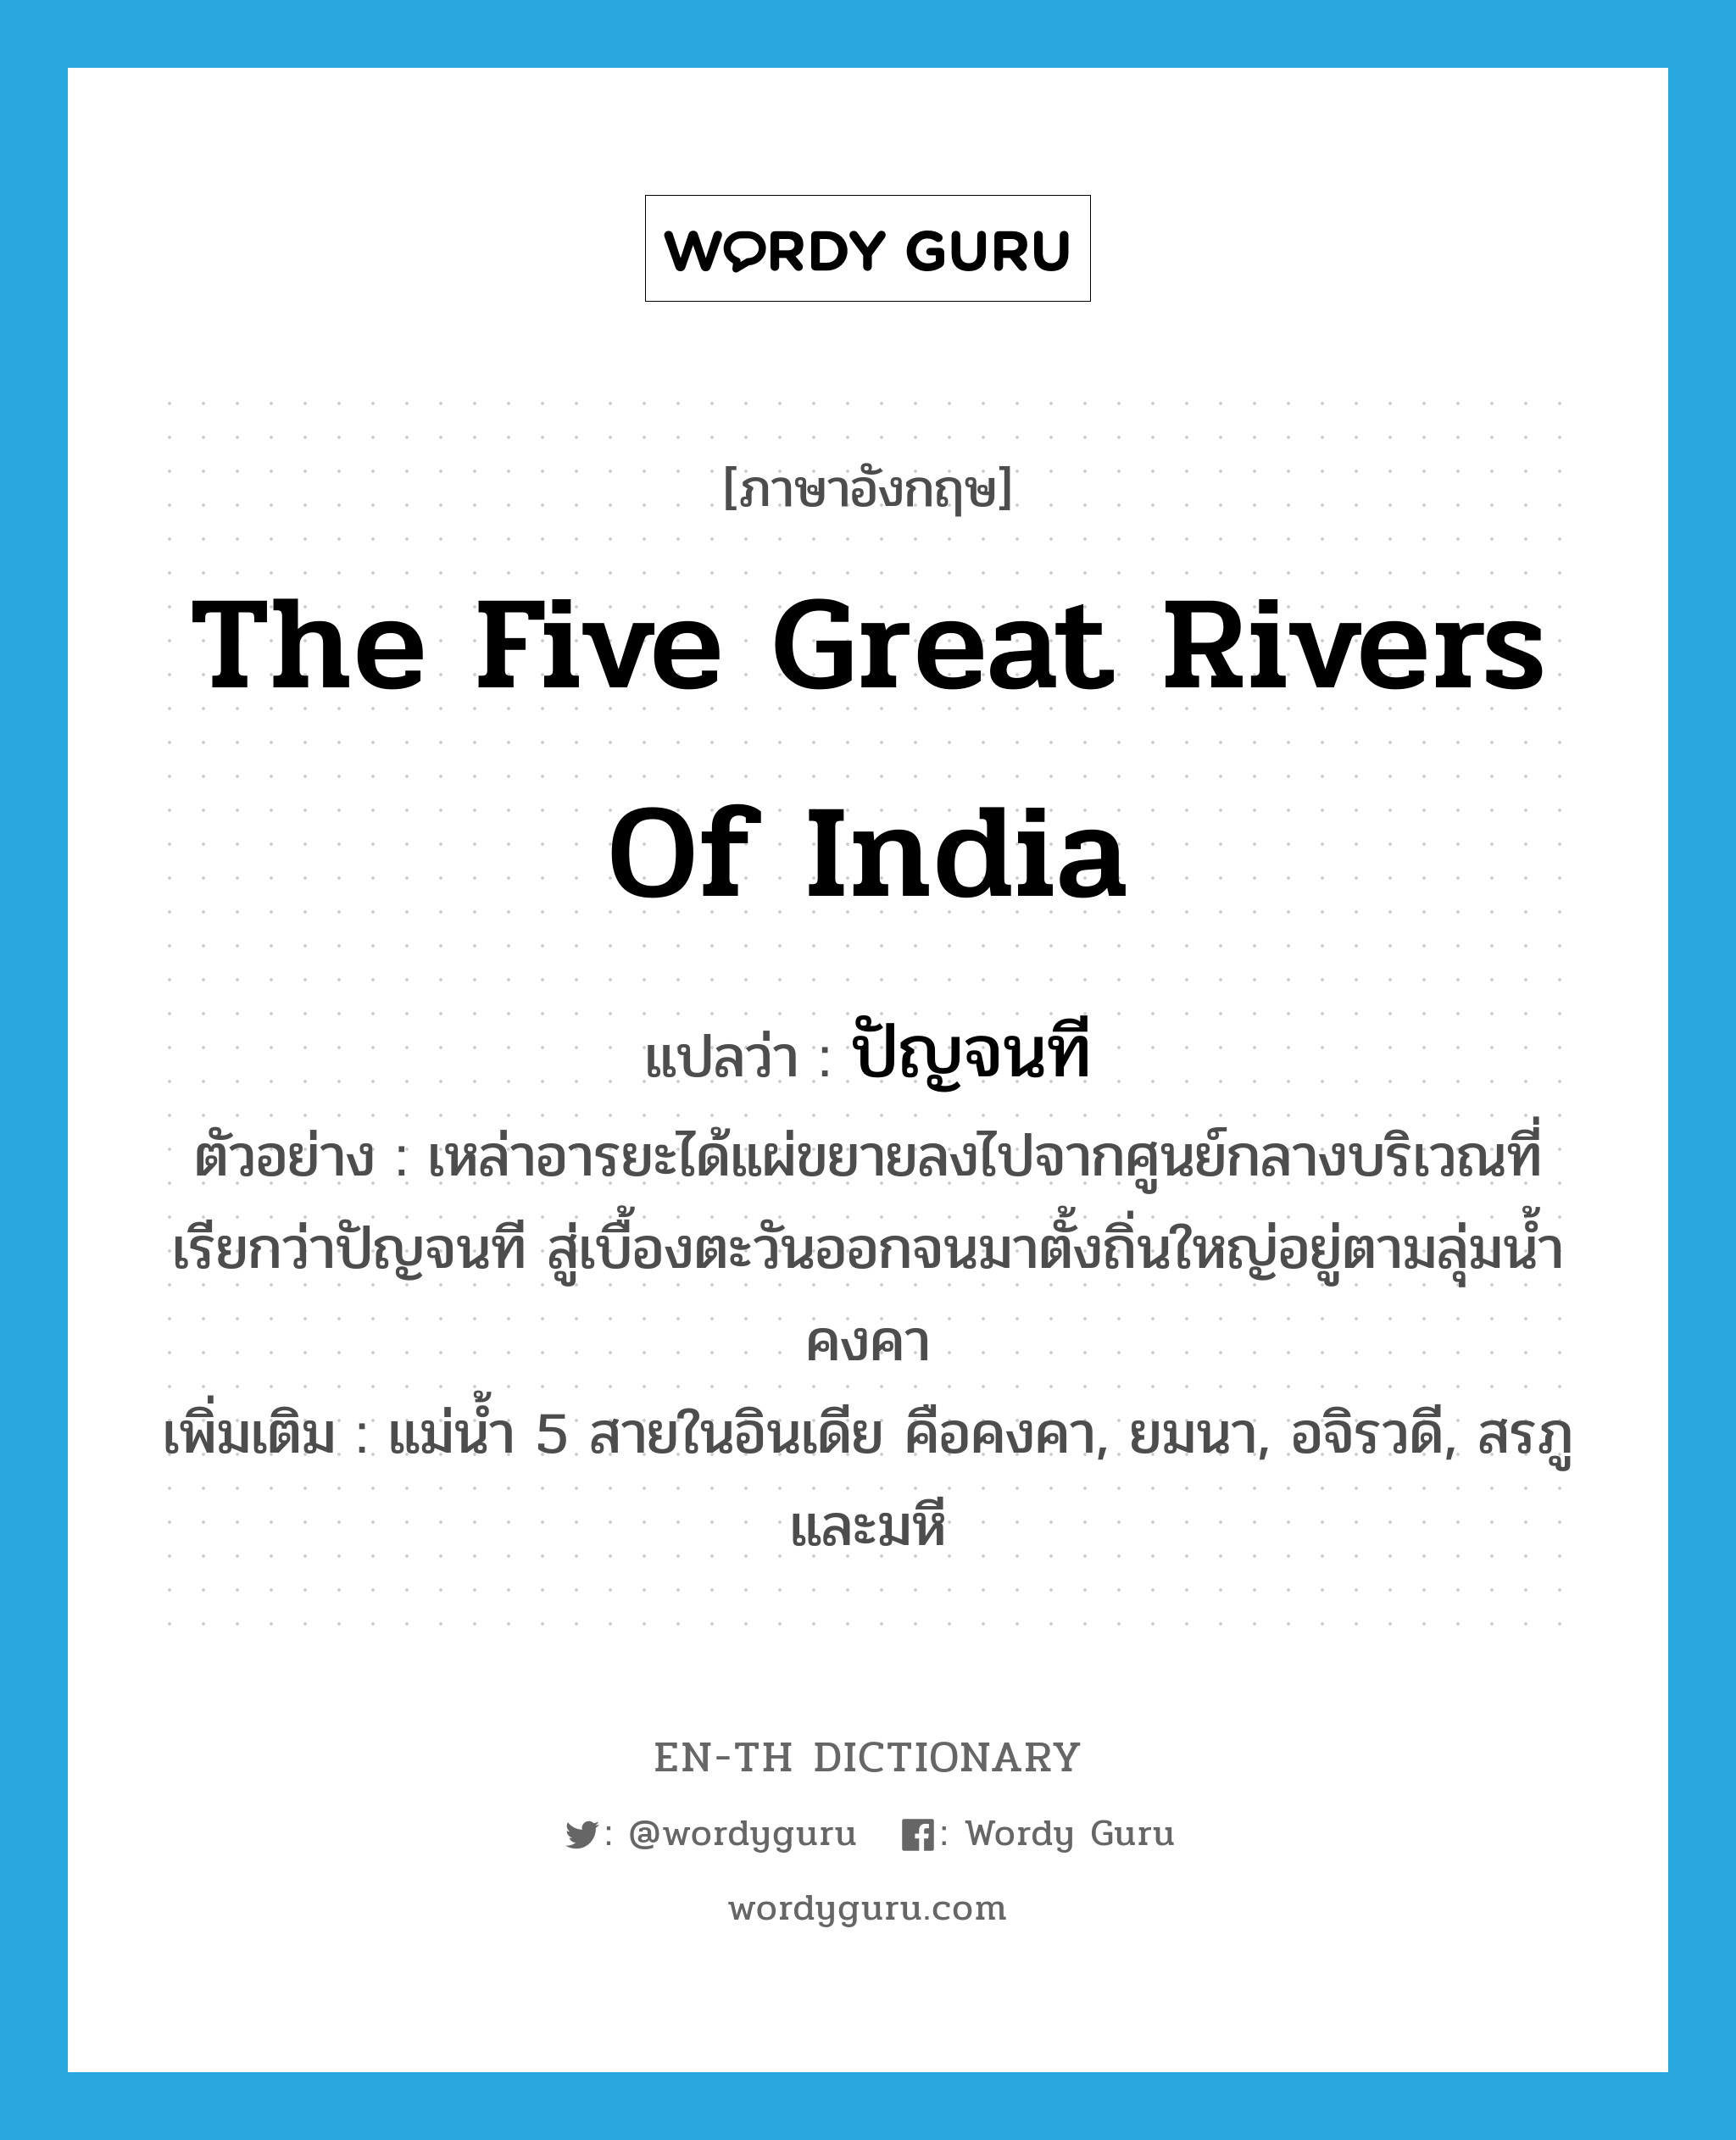 ปัญจนที ภาษาอังกฤษ?, คำศัพท์ภาษาอังกฤษ ปัญจนที แปลว่า the five great rivers of India ประเภท N ตัวอย่าง เหล่าอารยะได้แผ่ขยายลงไปจากศูนย์กลางบริเวณที่เรียกว่าปัญจนที สู่เบื้องตะวันออกจนมาตั้งถิ่นใหญ่อยู่ตามลุ่มน้ำคงคา เพิ่มเติม แม่น้ำ 5 สายในอินเดีย คือคงคา, ยมนา, อจิรวดี, สรภู และมหี หมวด N